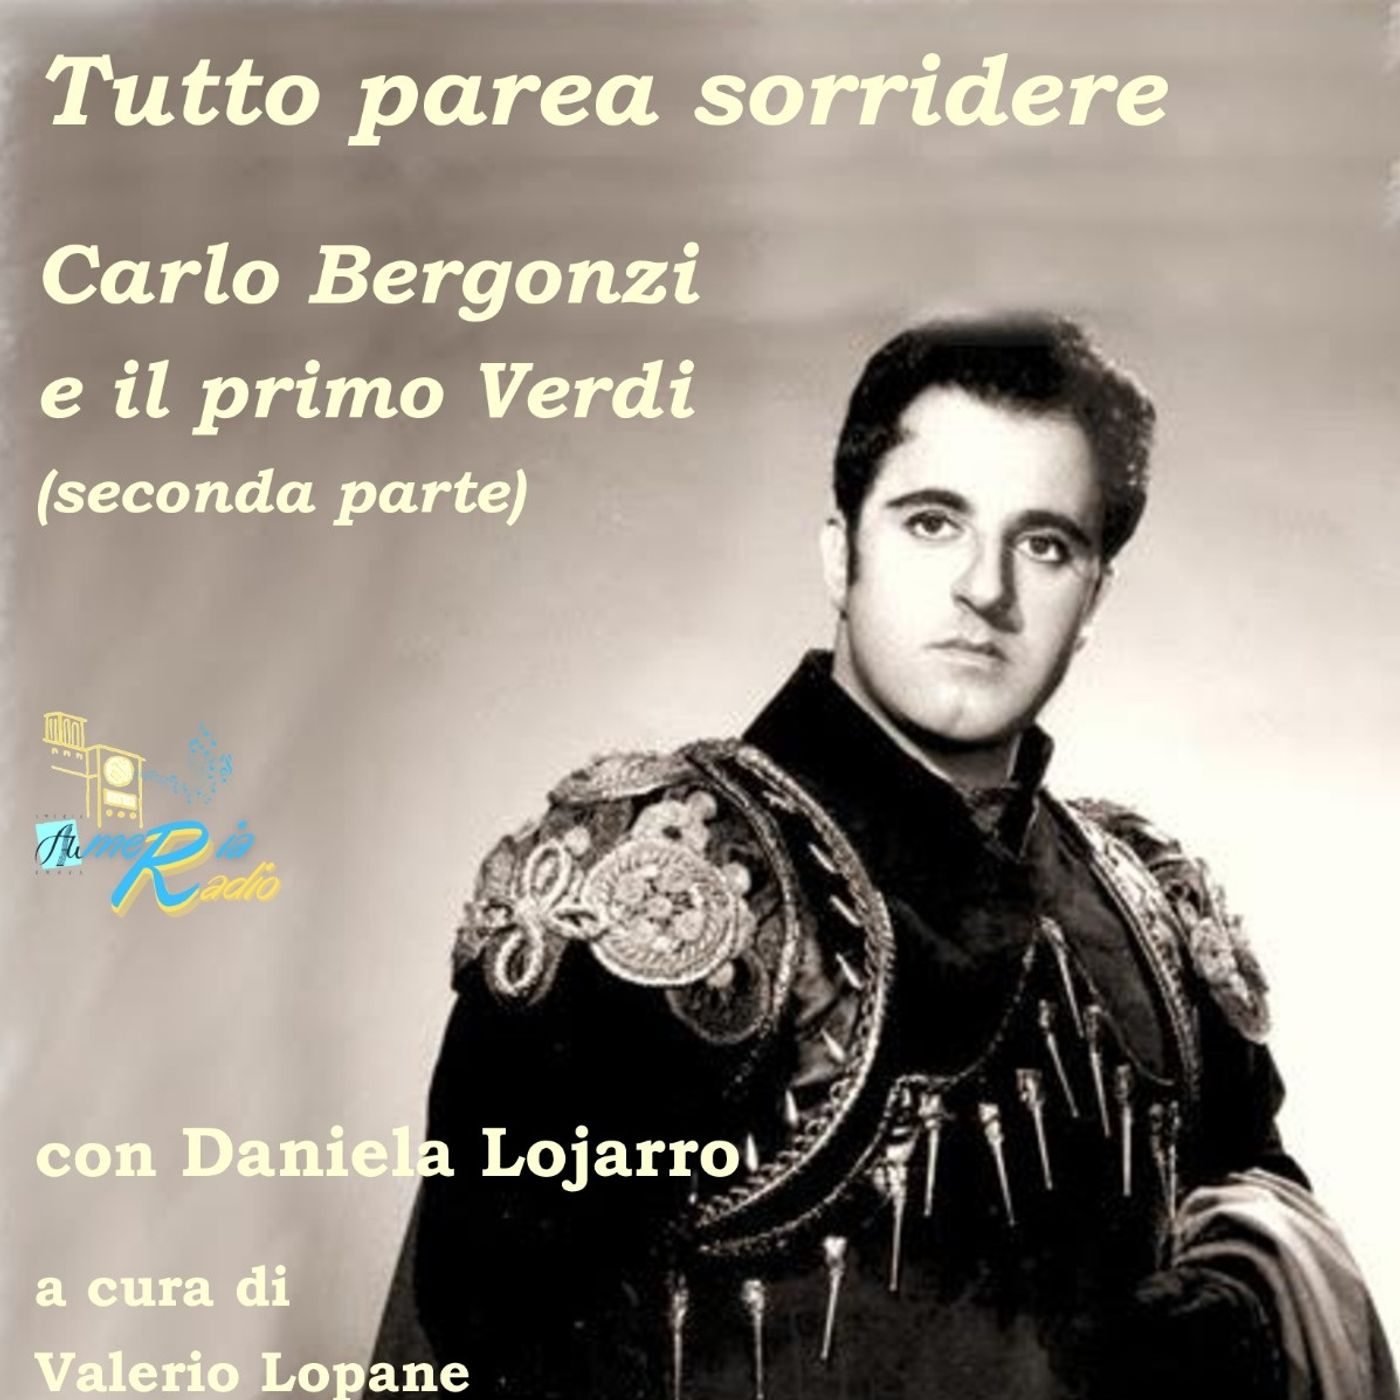 Tutto nel Mondo è Burla Stasera all'Opera - 100 anni Carlo Bergonzi 4° puntata